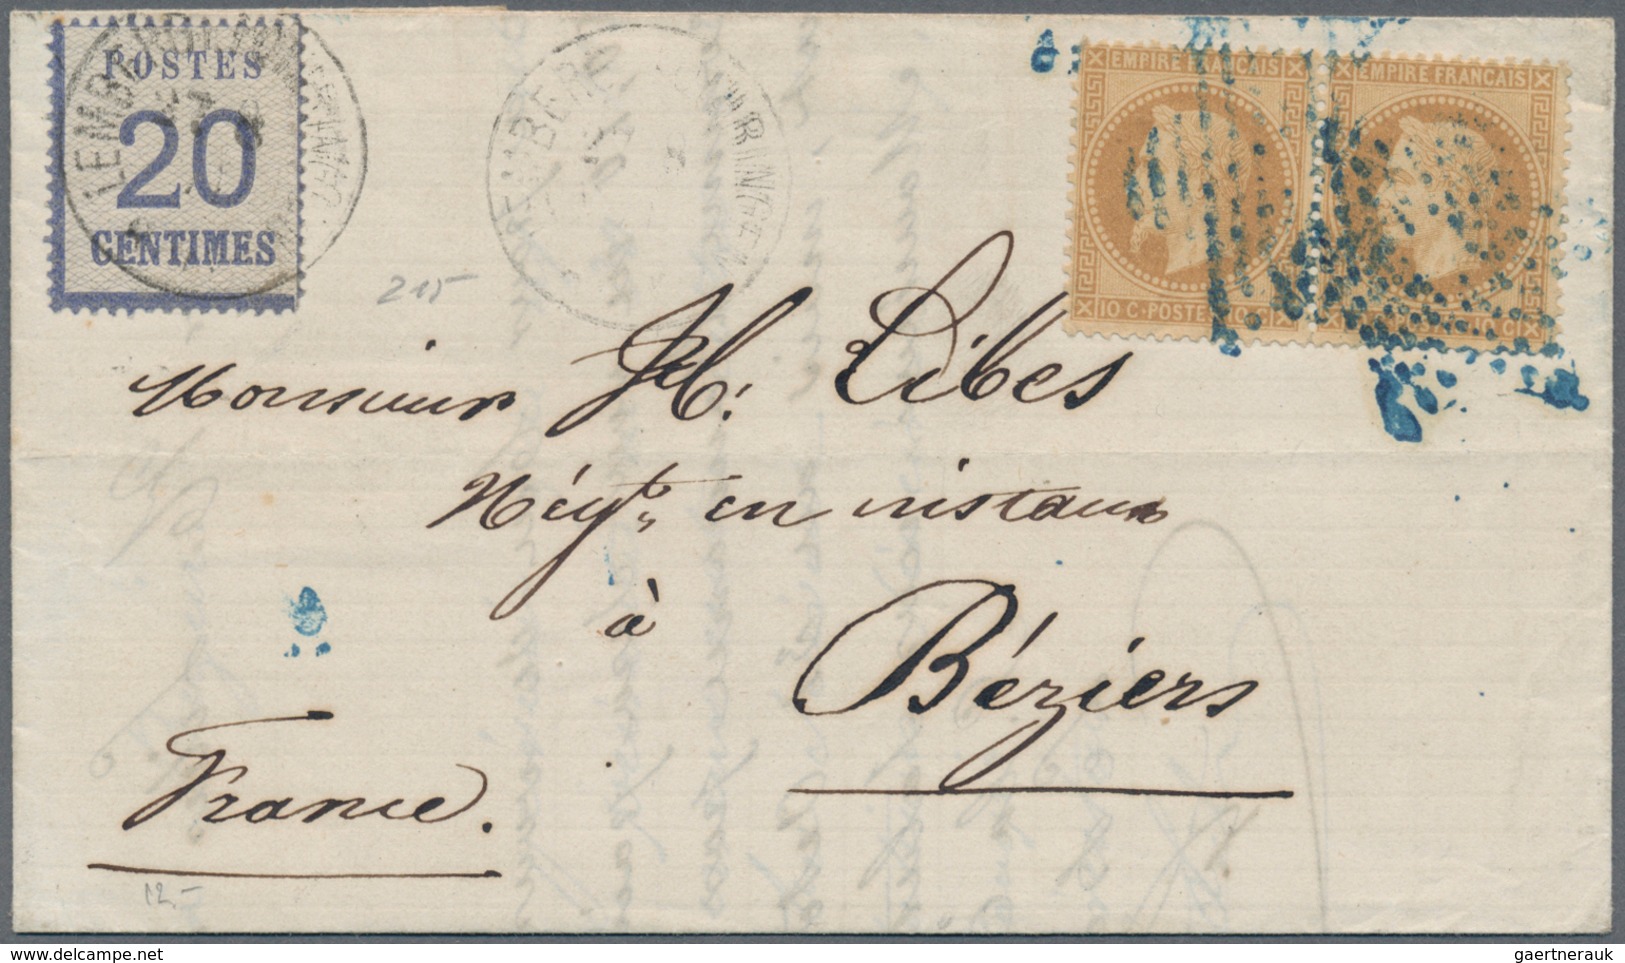 Elsass-Lothringen - Marken und Briefe: 1870/1875, DEUTSCH-FRANZÖSISCHER KRIEG, vielseitige Zusammens